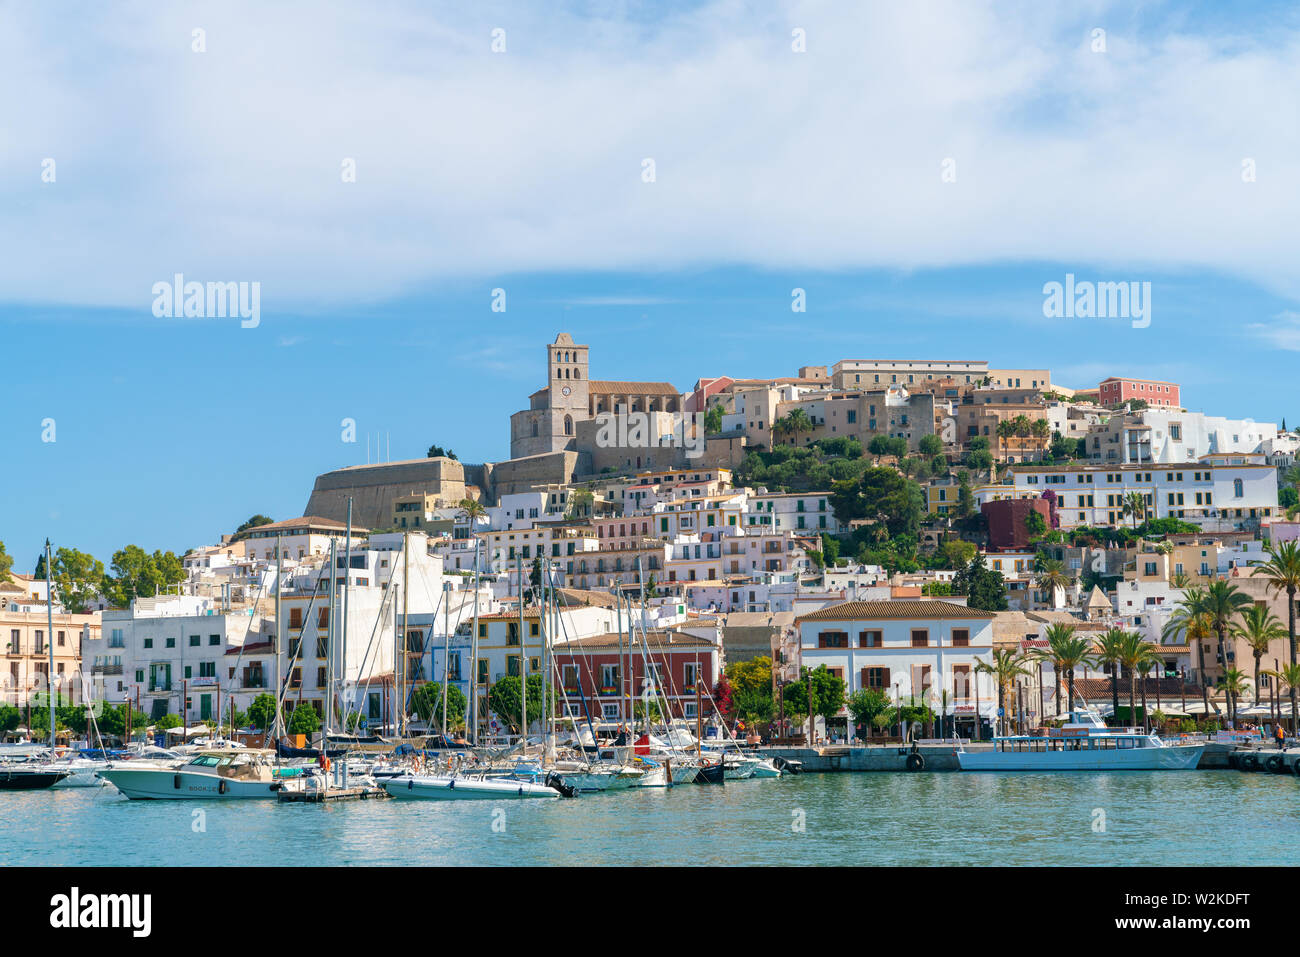 22 Giugno 2019 - Ibiza, Spagna. Scenic Ibiza città vecchia Dalt Vila con la cattedrale di Santa Maria d'Eivissa costruita sulla sommità. La vista sul porticciolo e ol Foto Stock